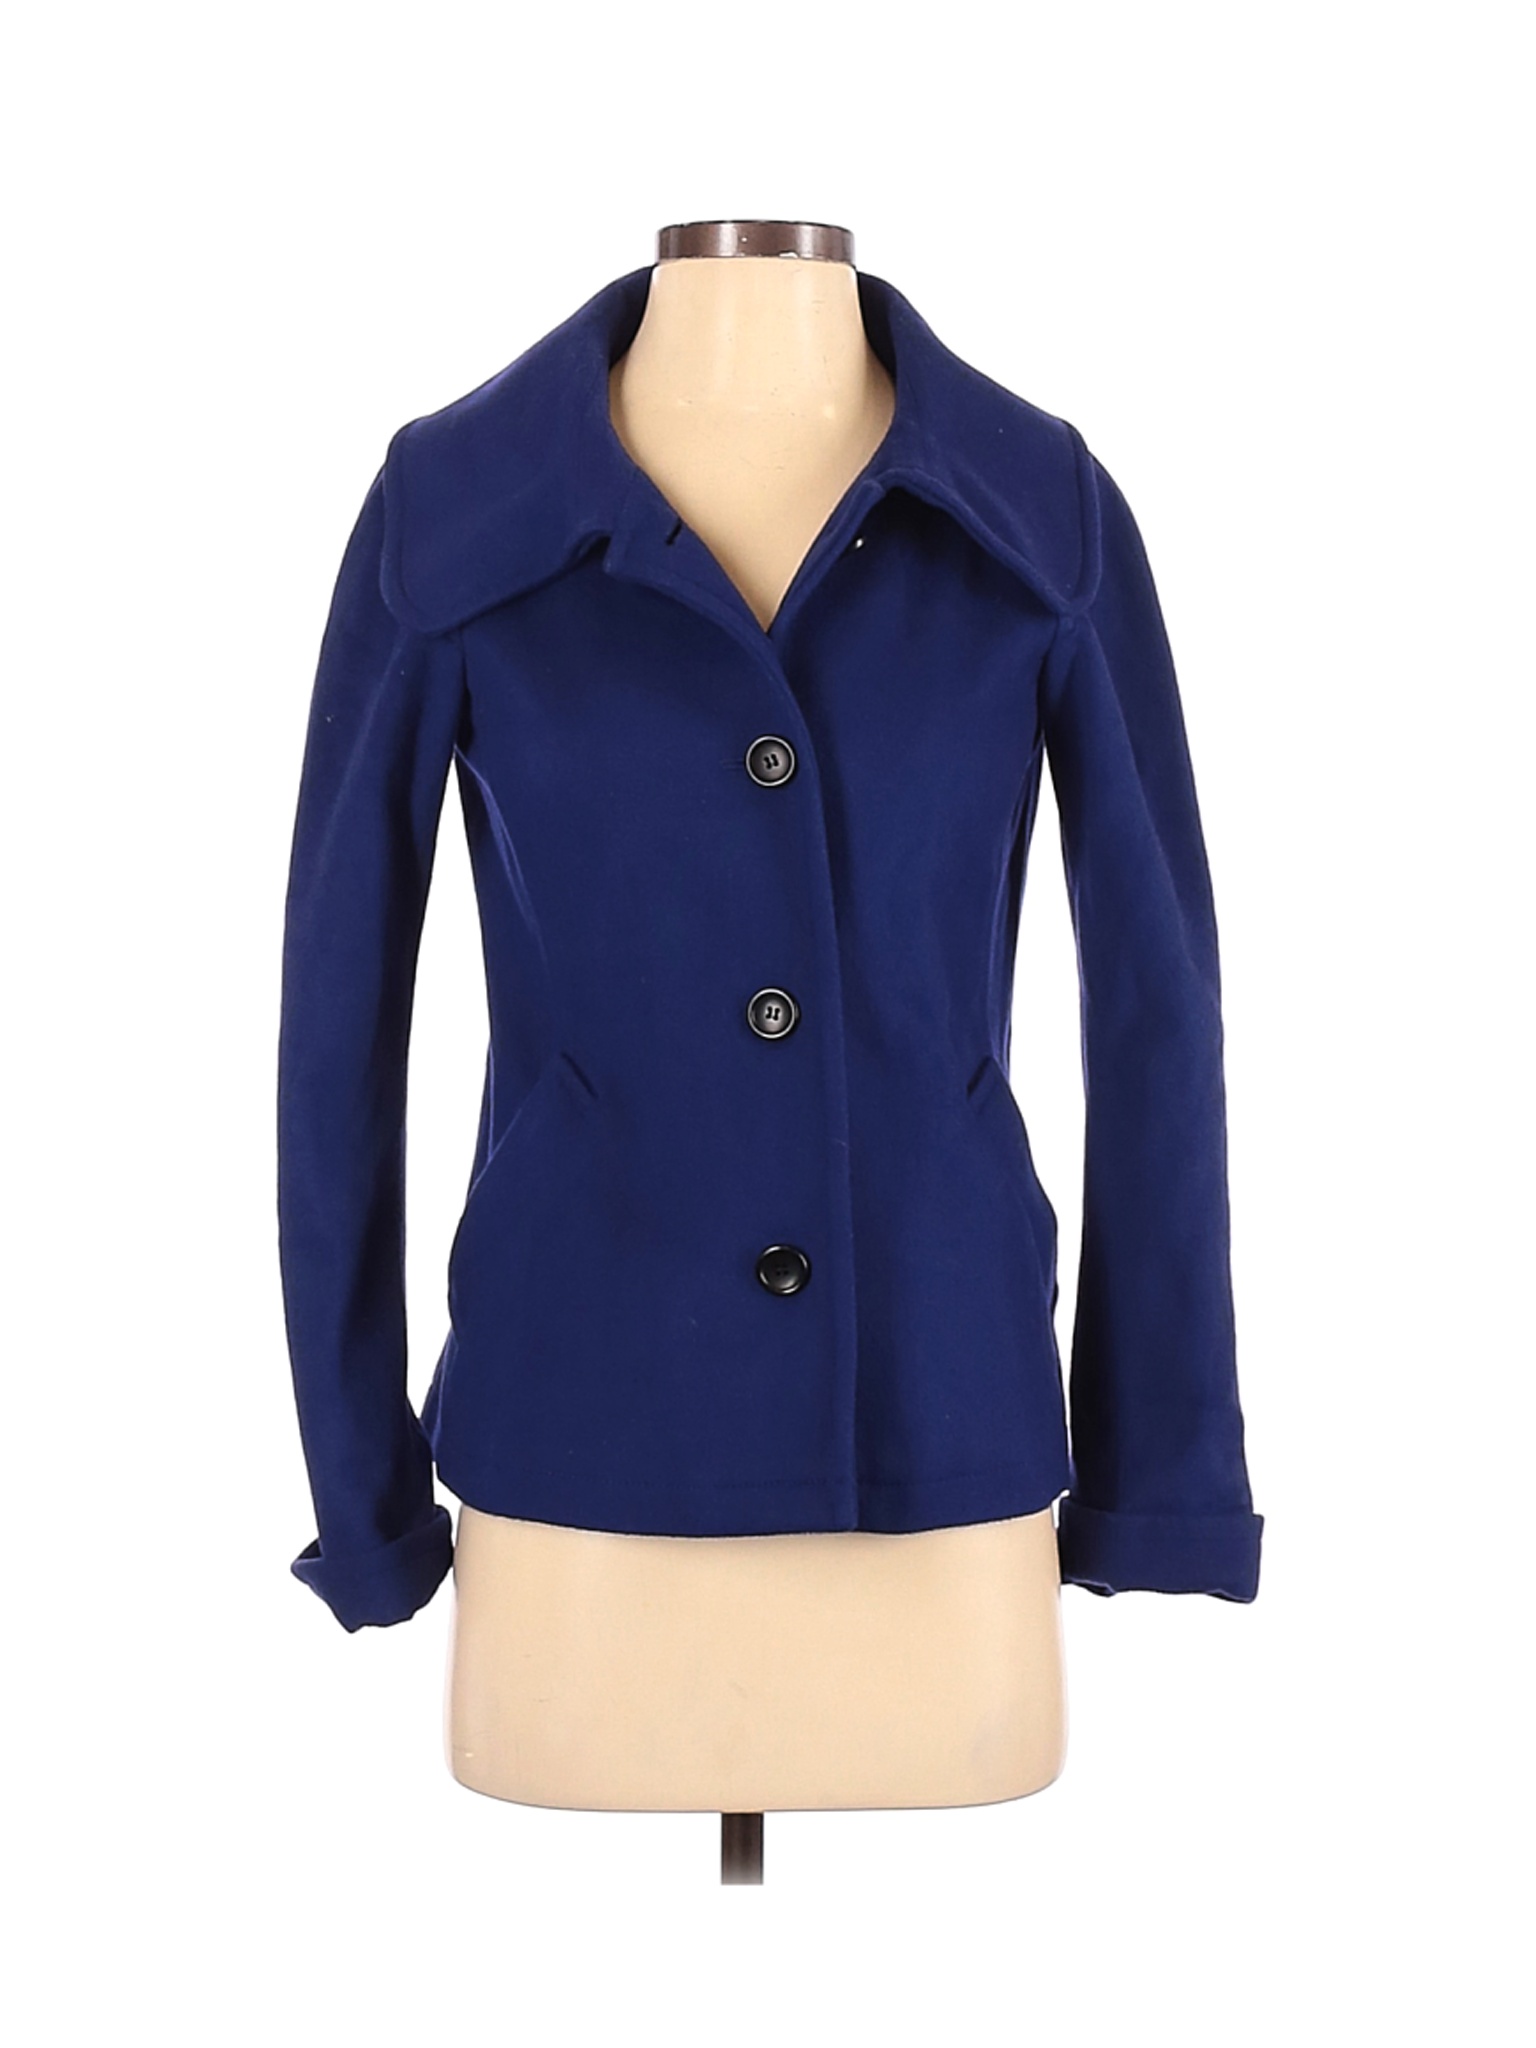 Theory Women Blue Wool Coat S | eBay